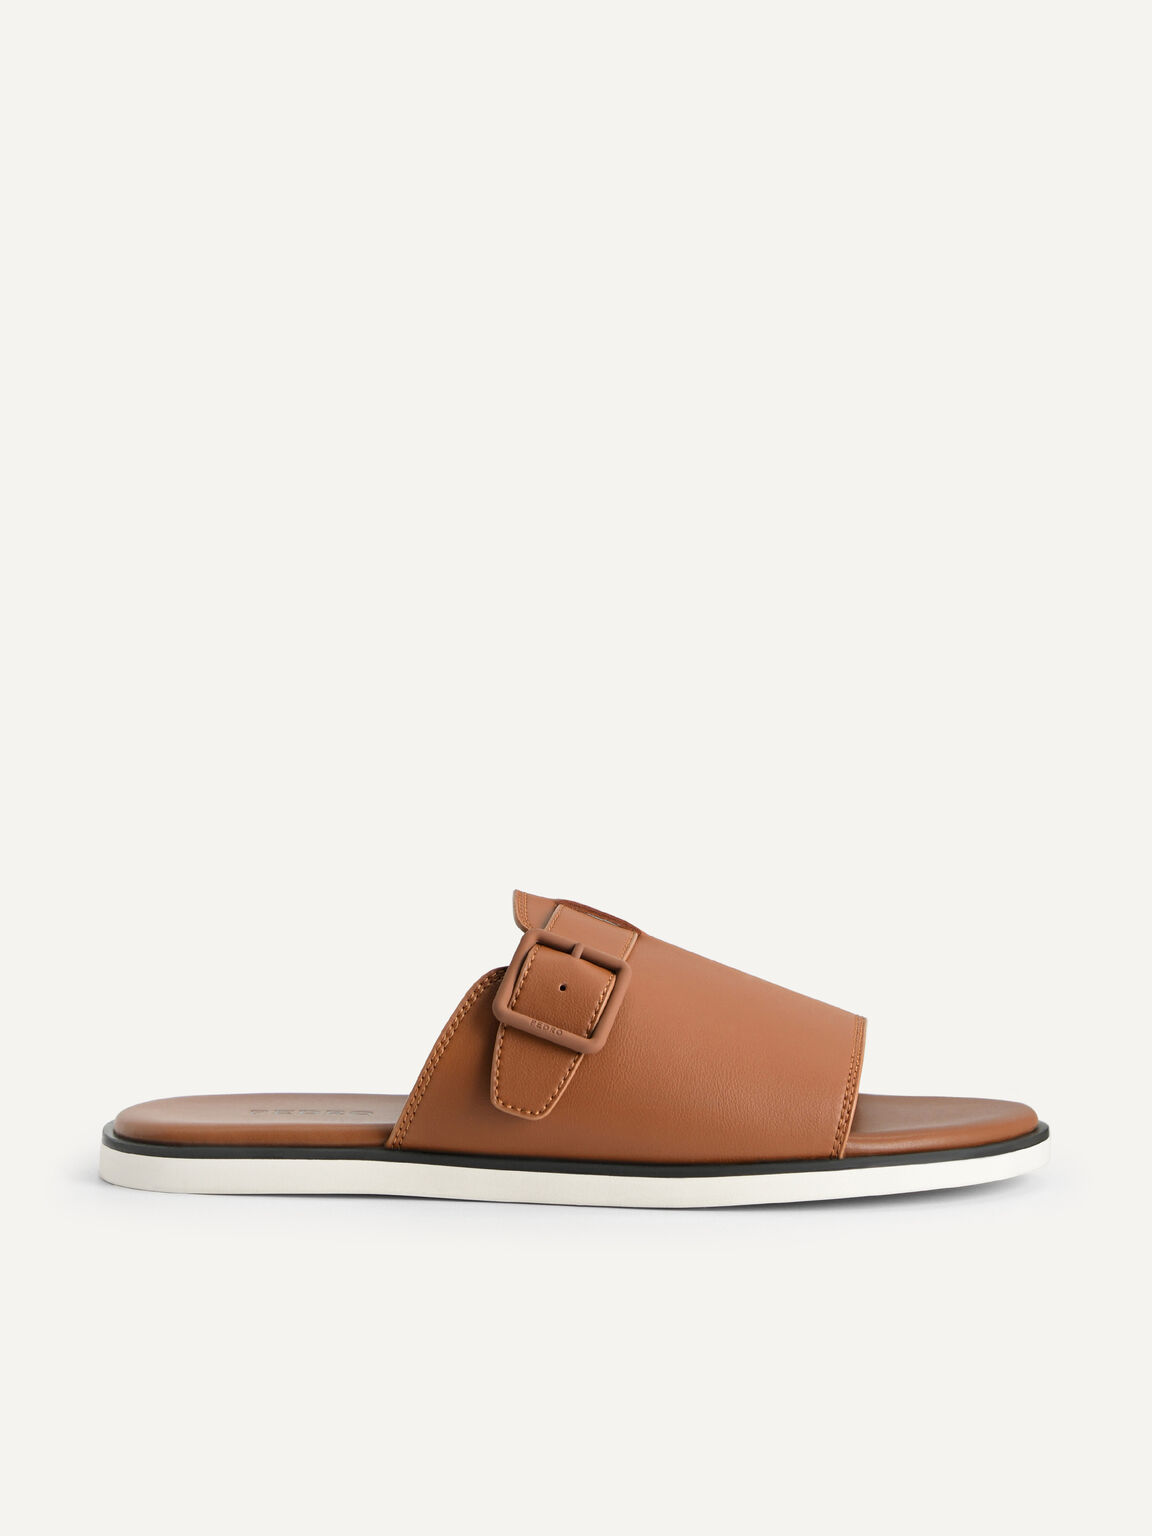 Monochrome Slide Sandals, Brown